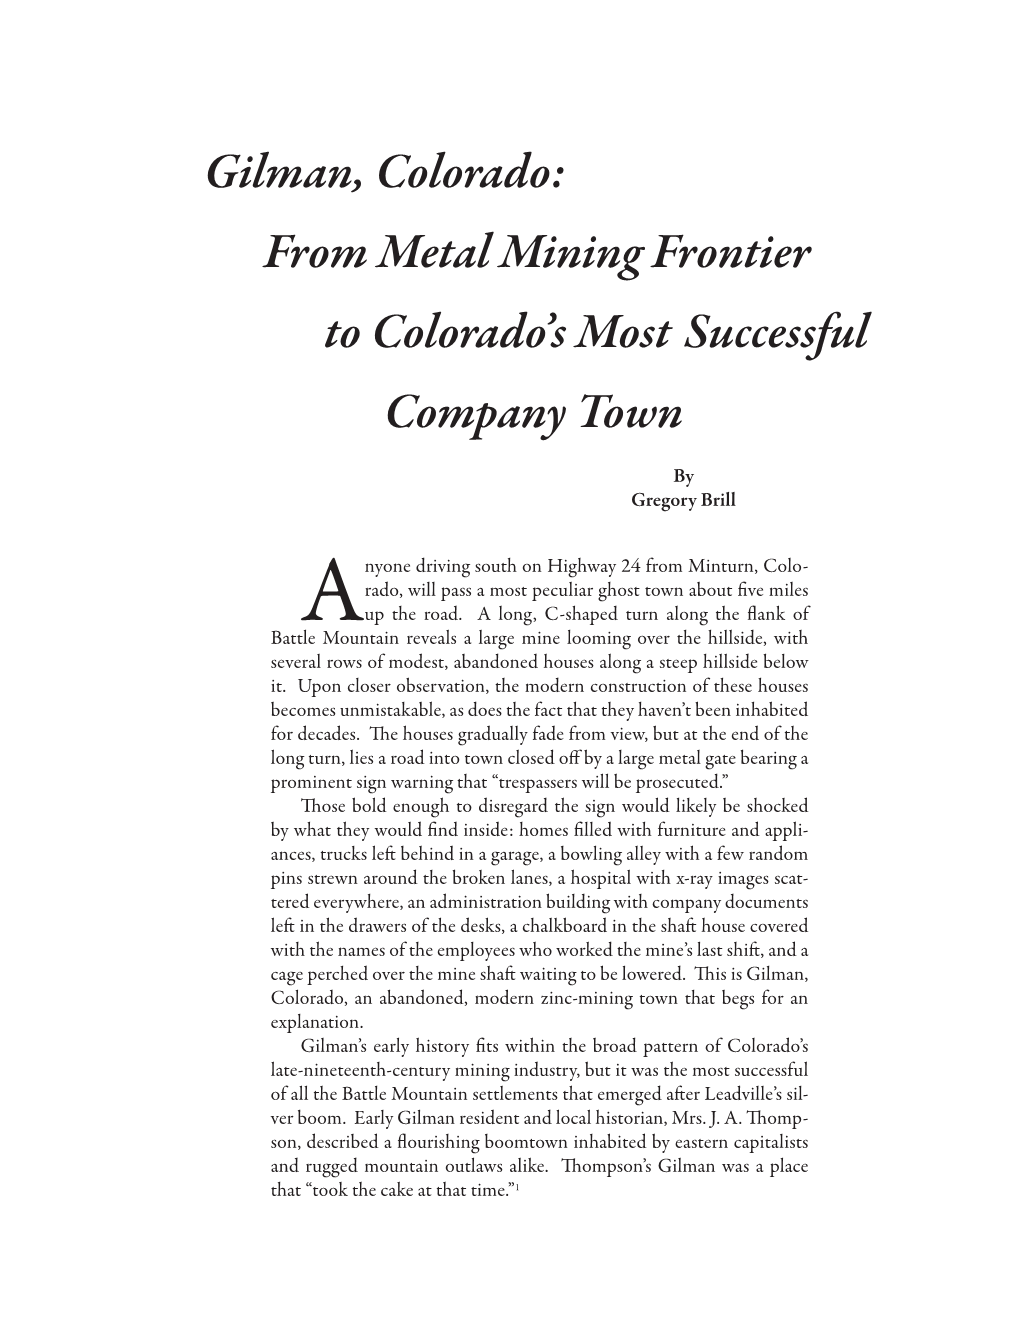 Gilman, Colorado: from Metal Mining Frontier to Colorado's Most